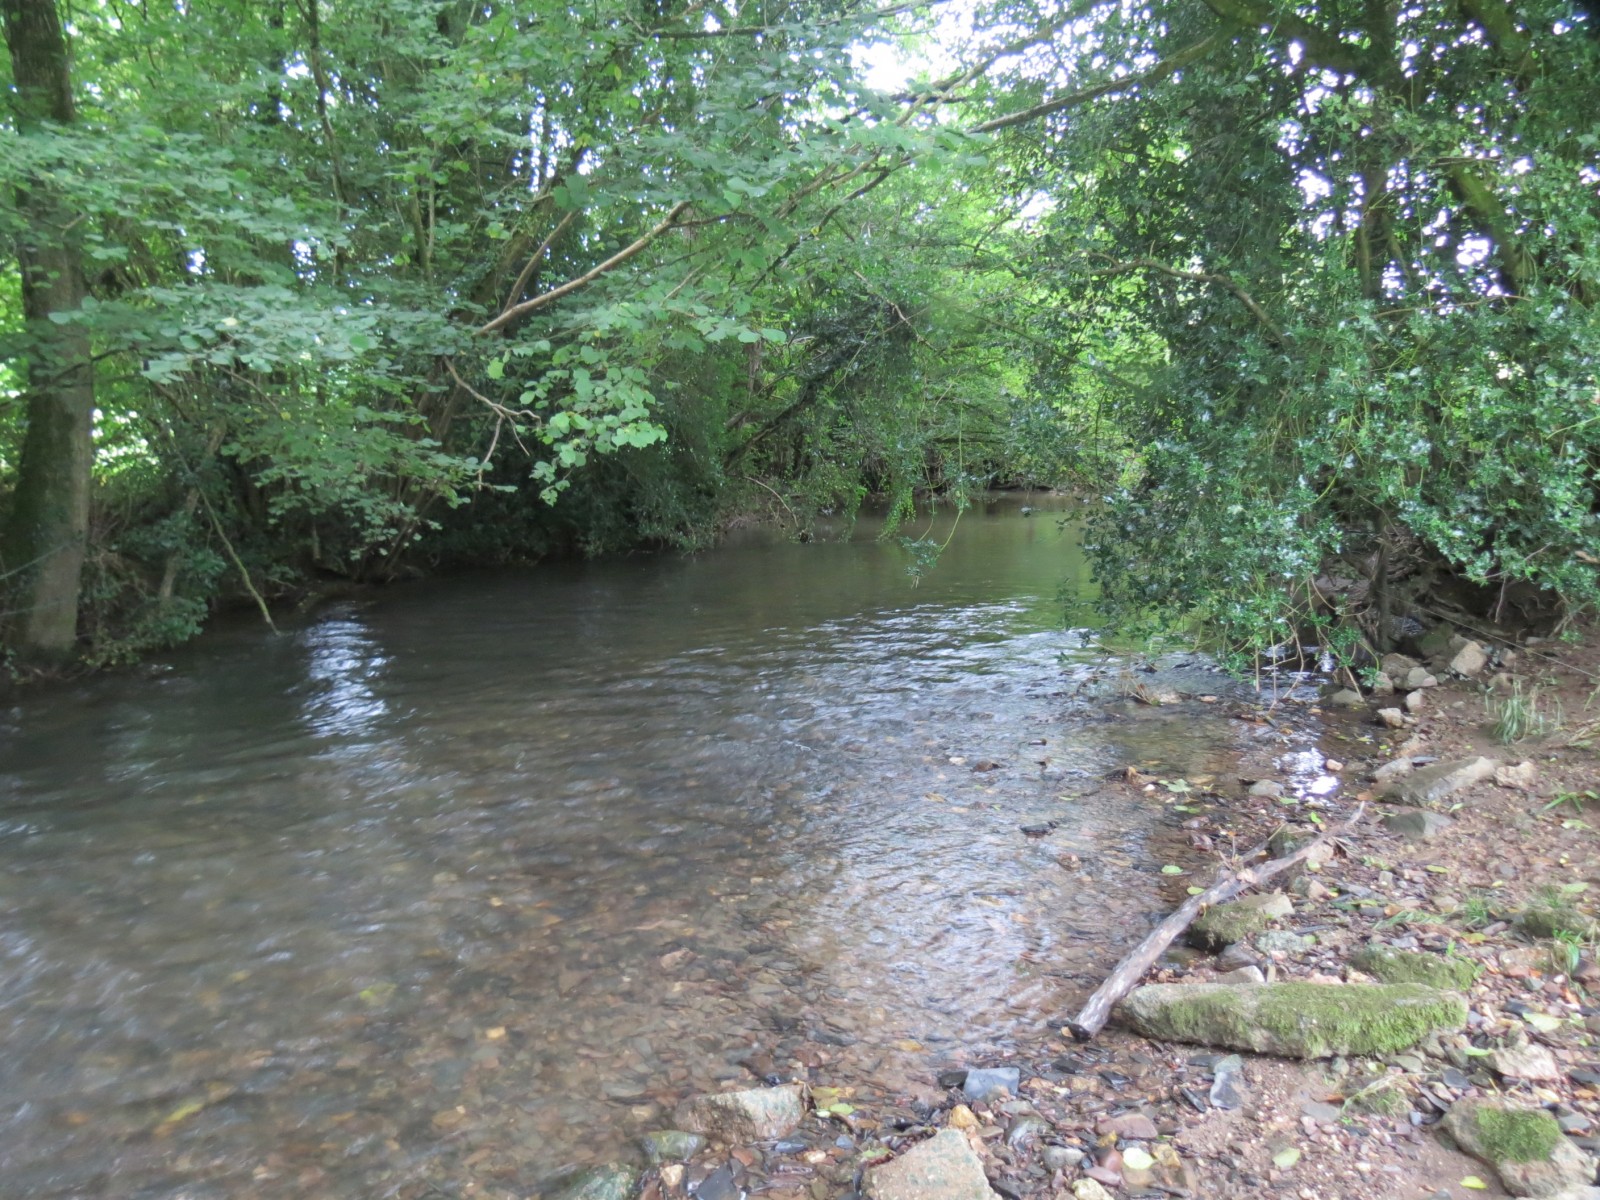 11.-Upstream-from-Greenham-9